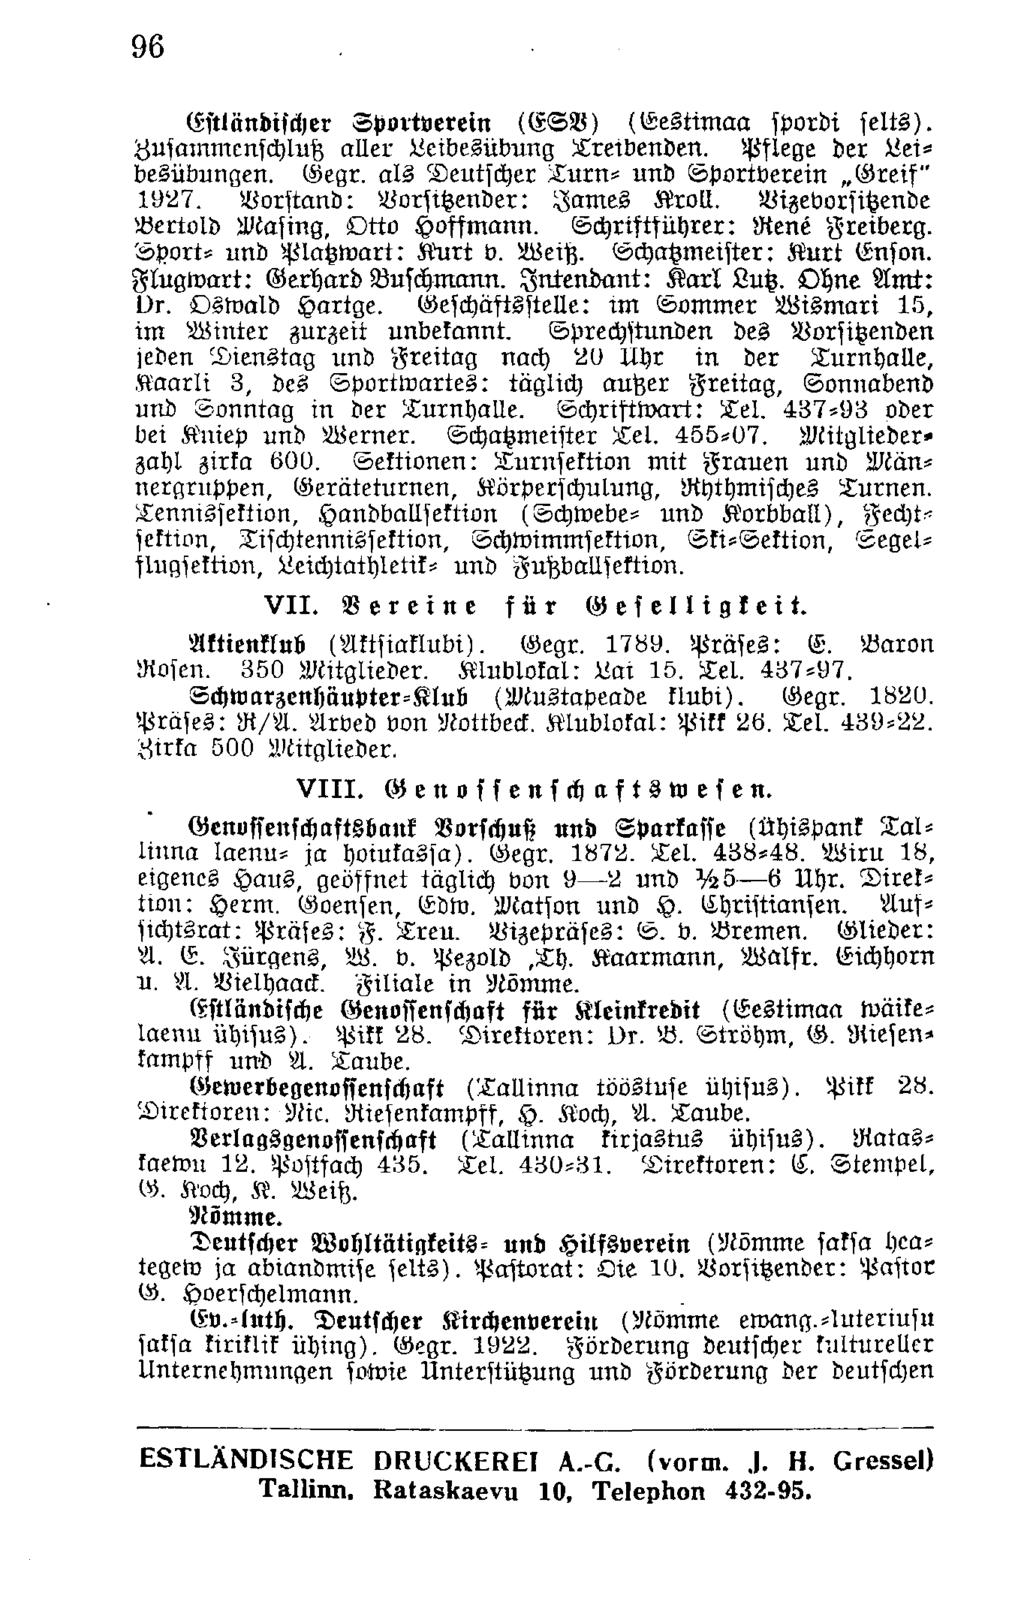 96 (Lsiländischer Sportverein (CSV) (Eestimaa spordi selts). Zusammenschluß aller Leibesübung Treibenden. Pflege der Leibesübungen. Gegr. als Deutscher Turn- und Sportverein Greif" 1927.